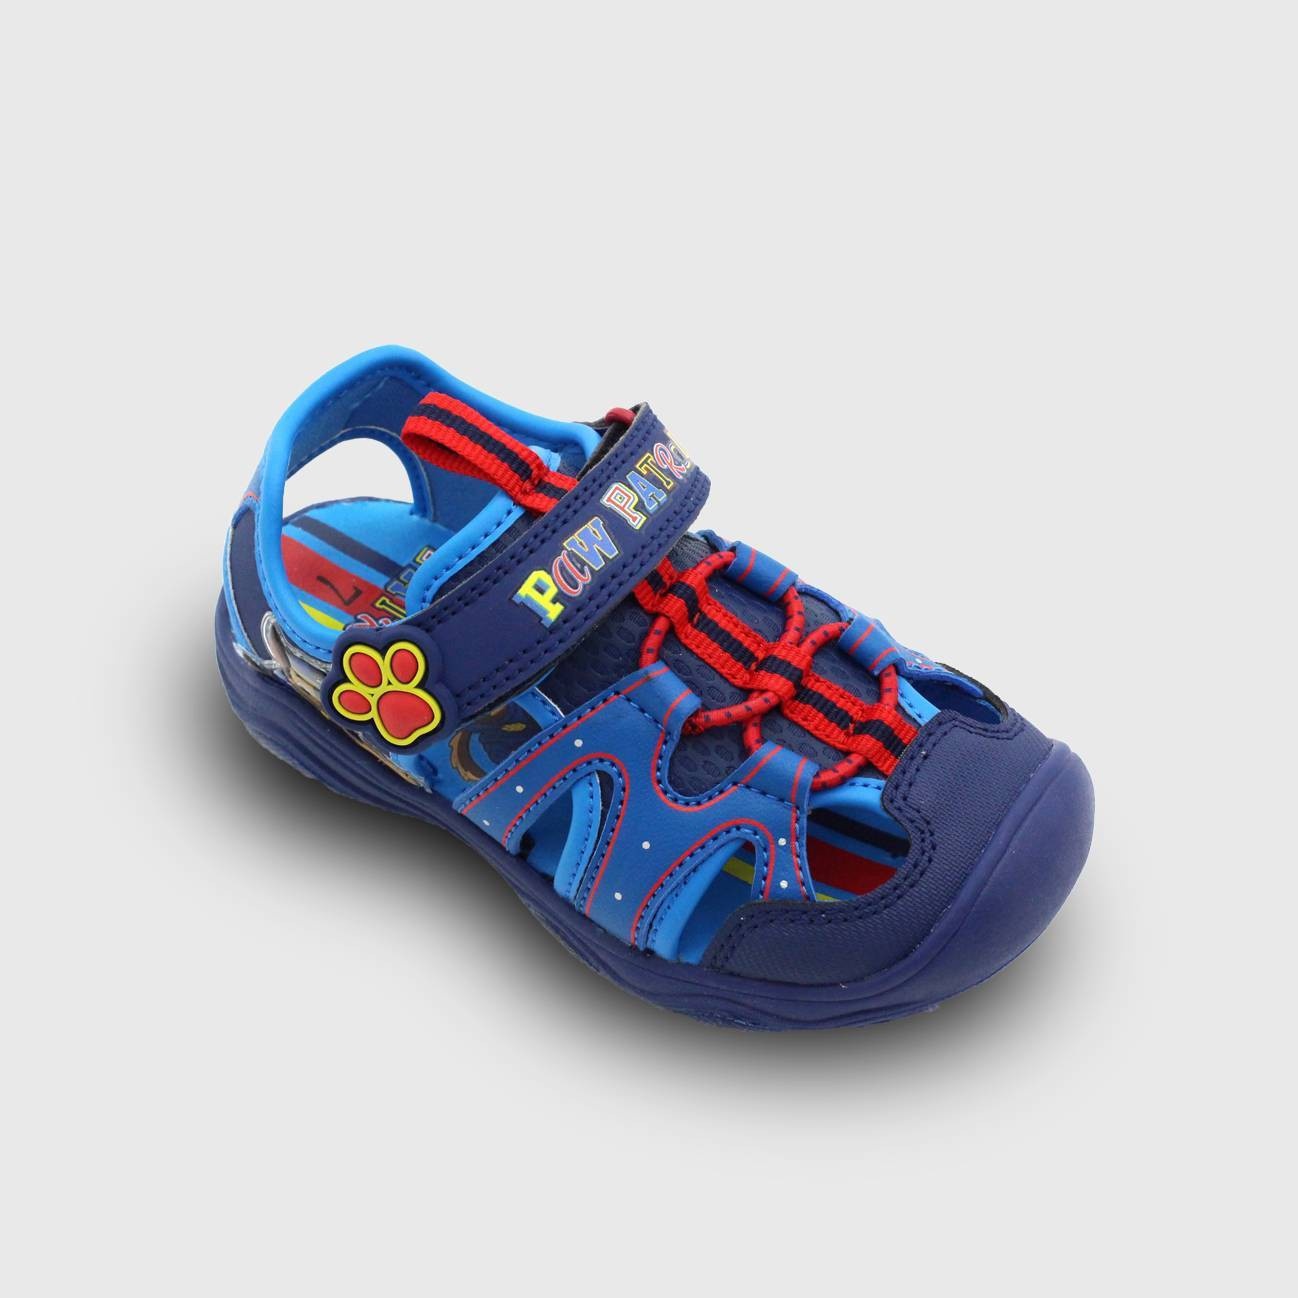 slide 1 of 5, Toddler Boys' Camp PAW Patrol Sandals - Blue 5, 1 ct